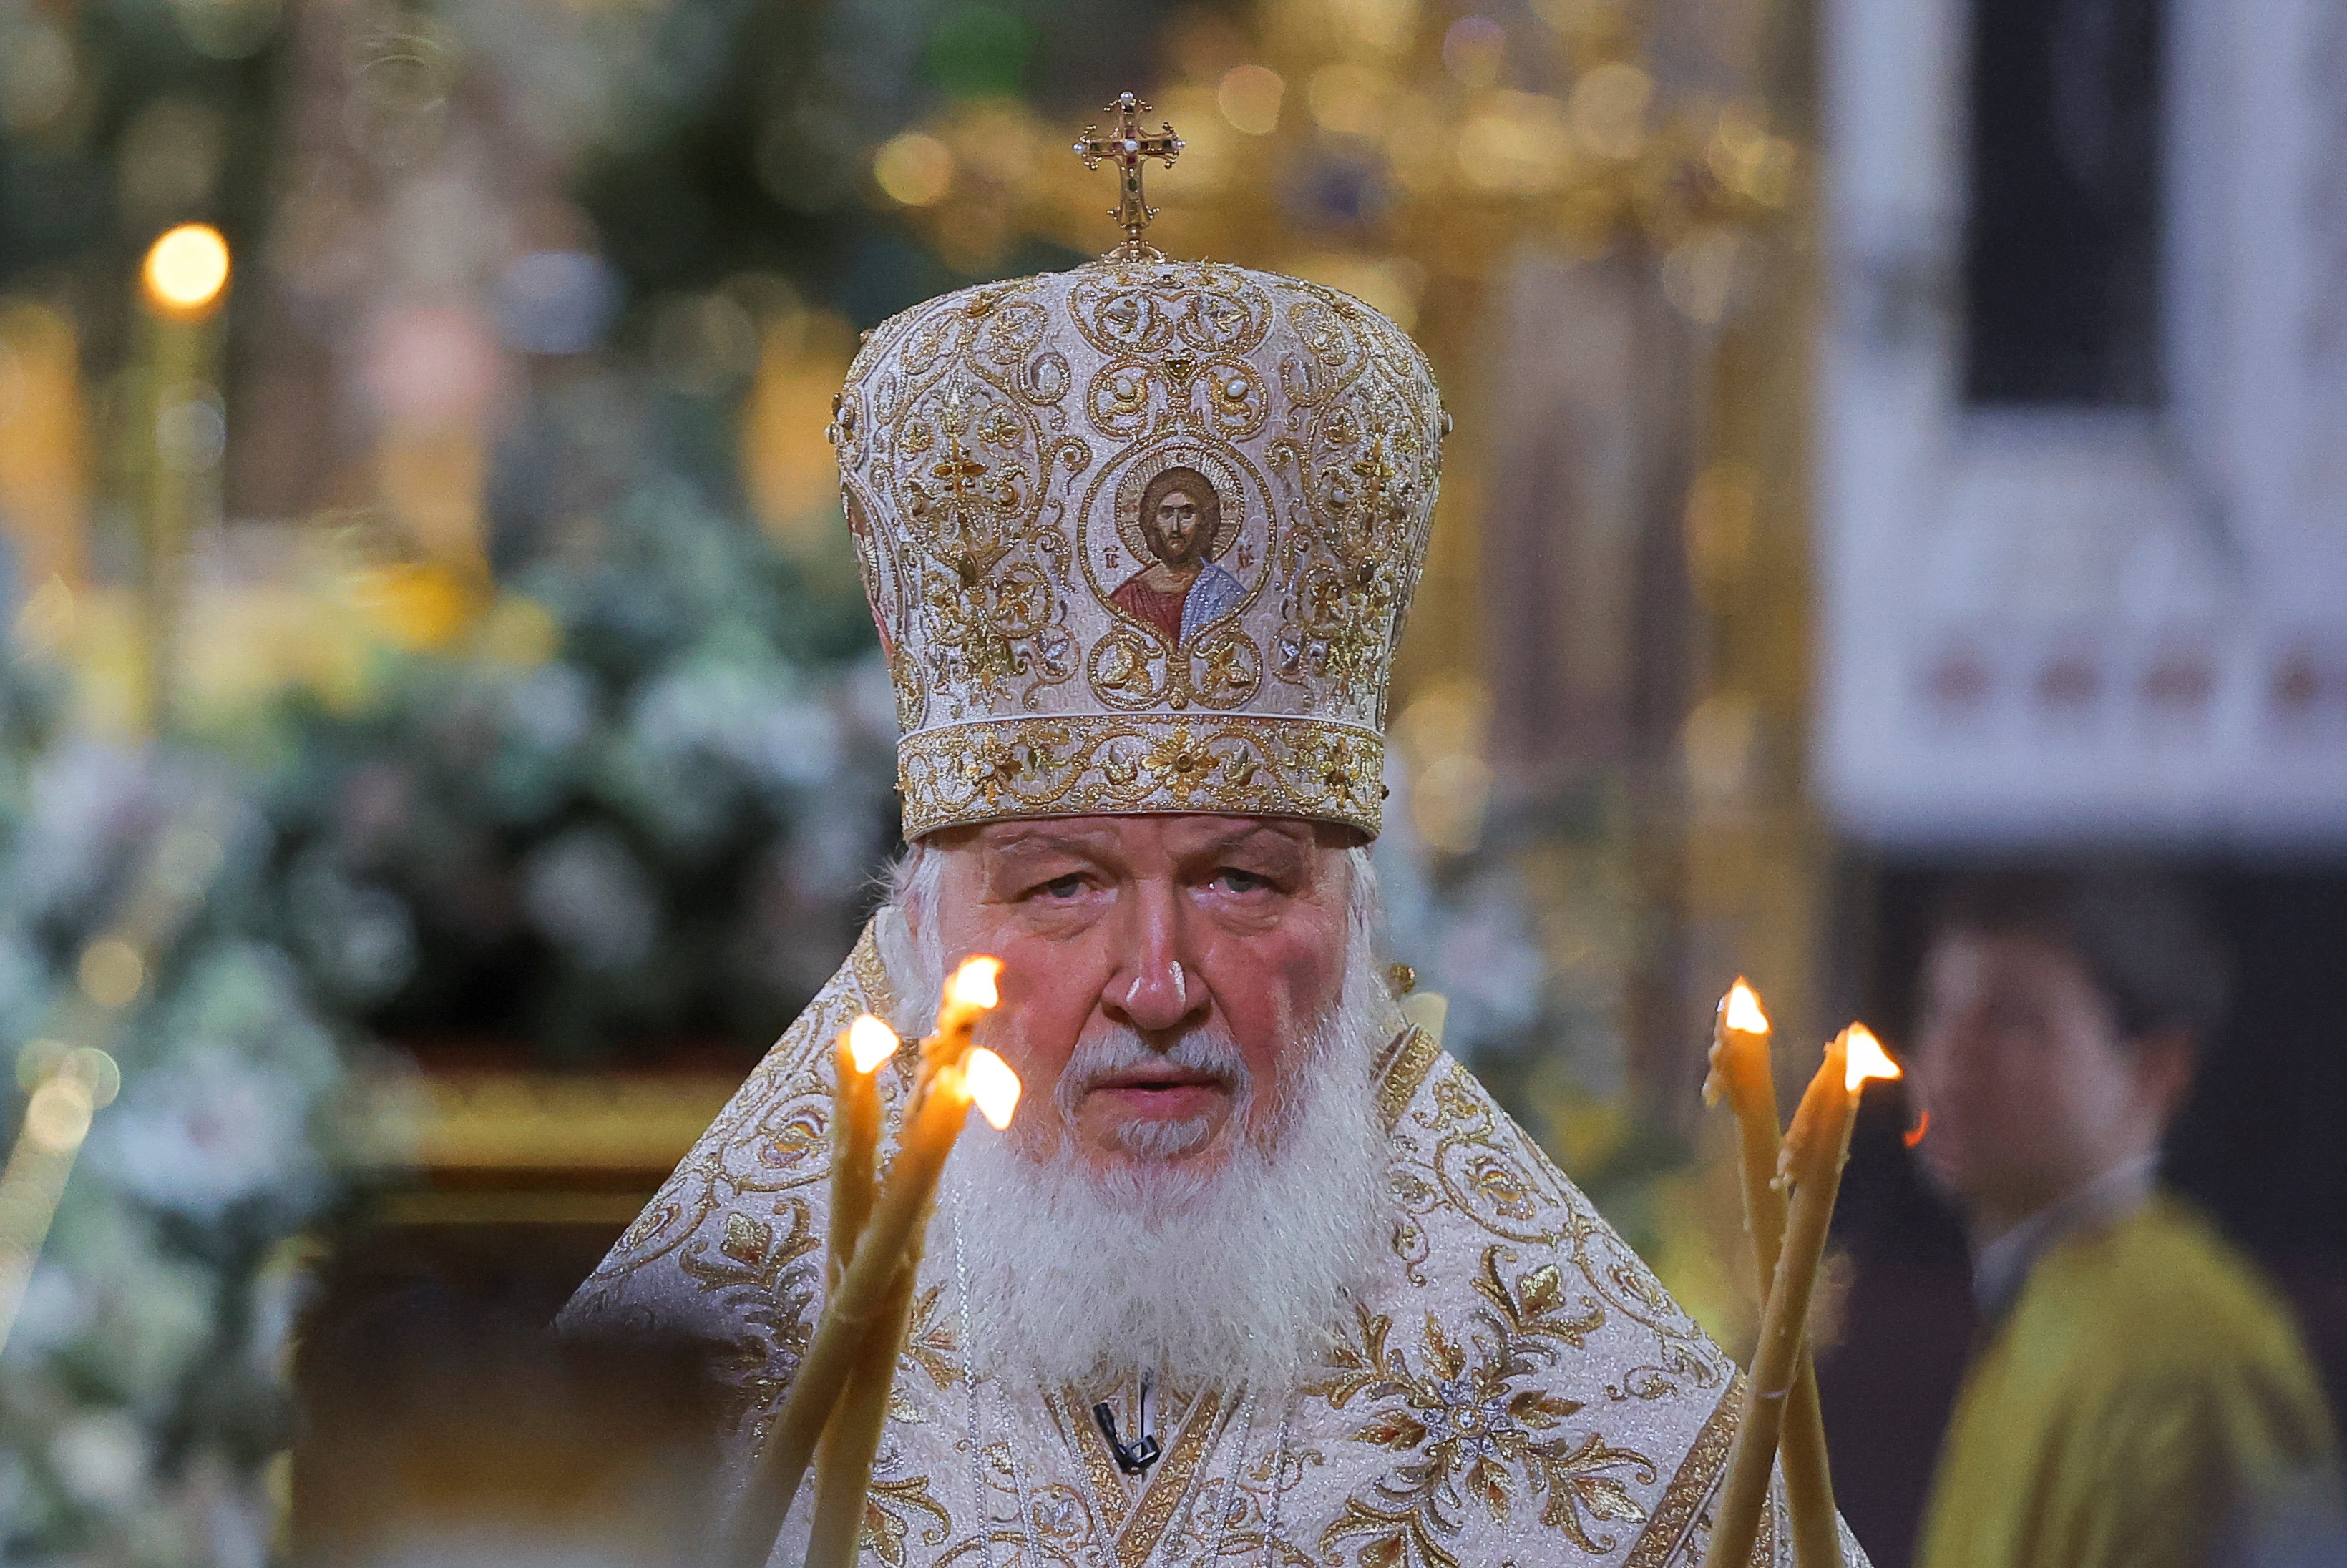 Putin anunció un alto al fuego después de que el patriarca de la Iglesia ortodoxa rusa, Kirill, llamara a cesar los combates por la Navidad ortodoxa, que se celebró este sábado. (REUTERS)